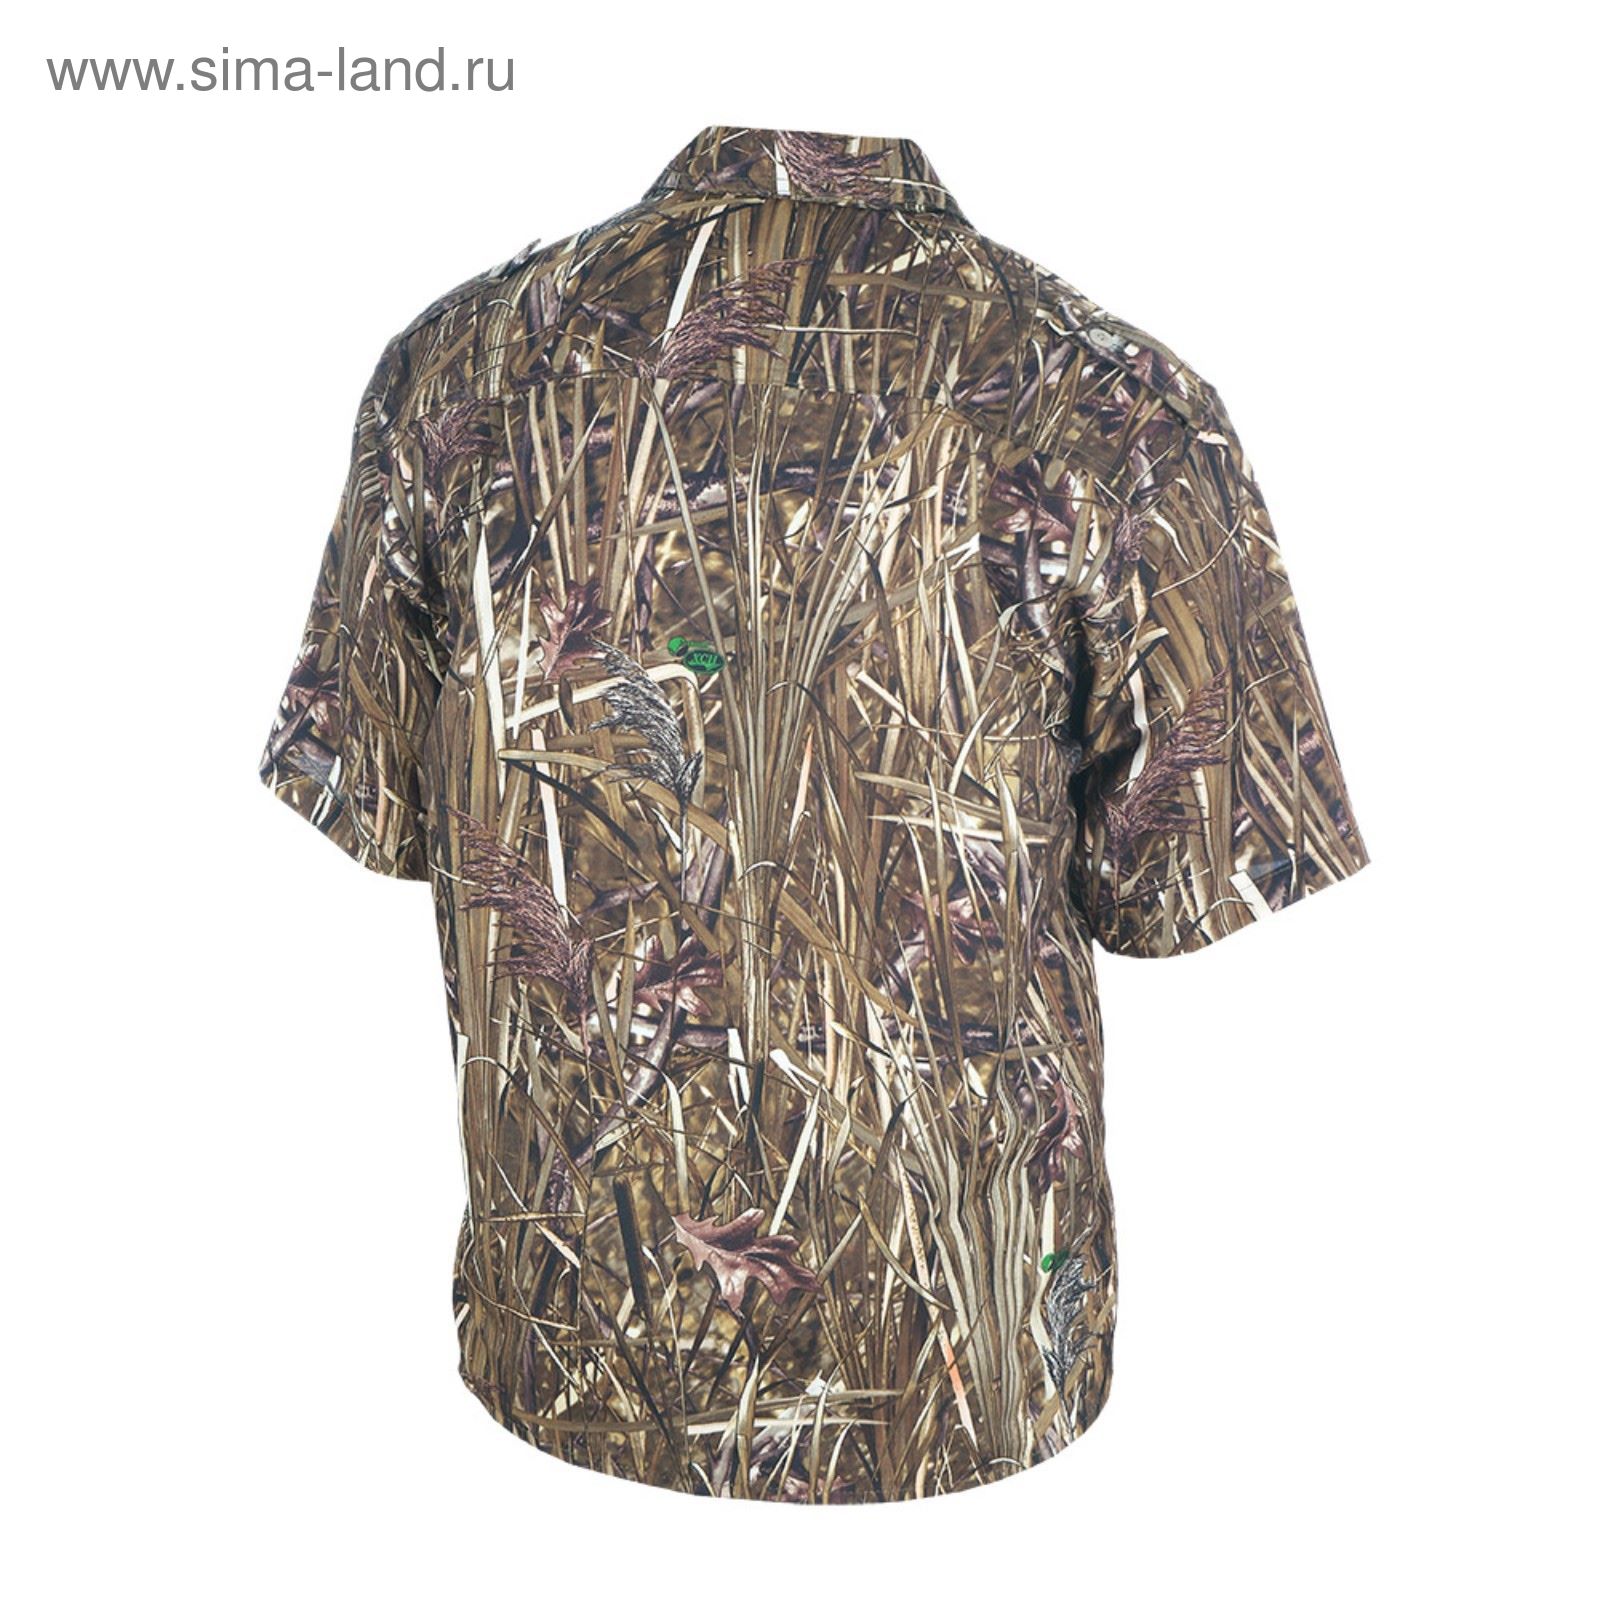 Рубашка с коротким рукавом "Бриз"(осока) 58/170-176 р-р